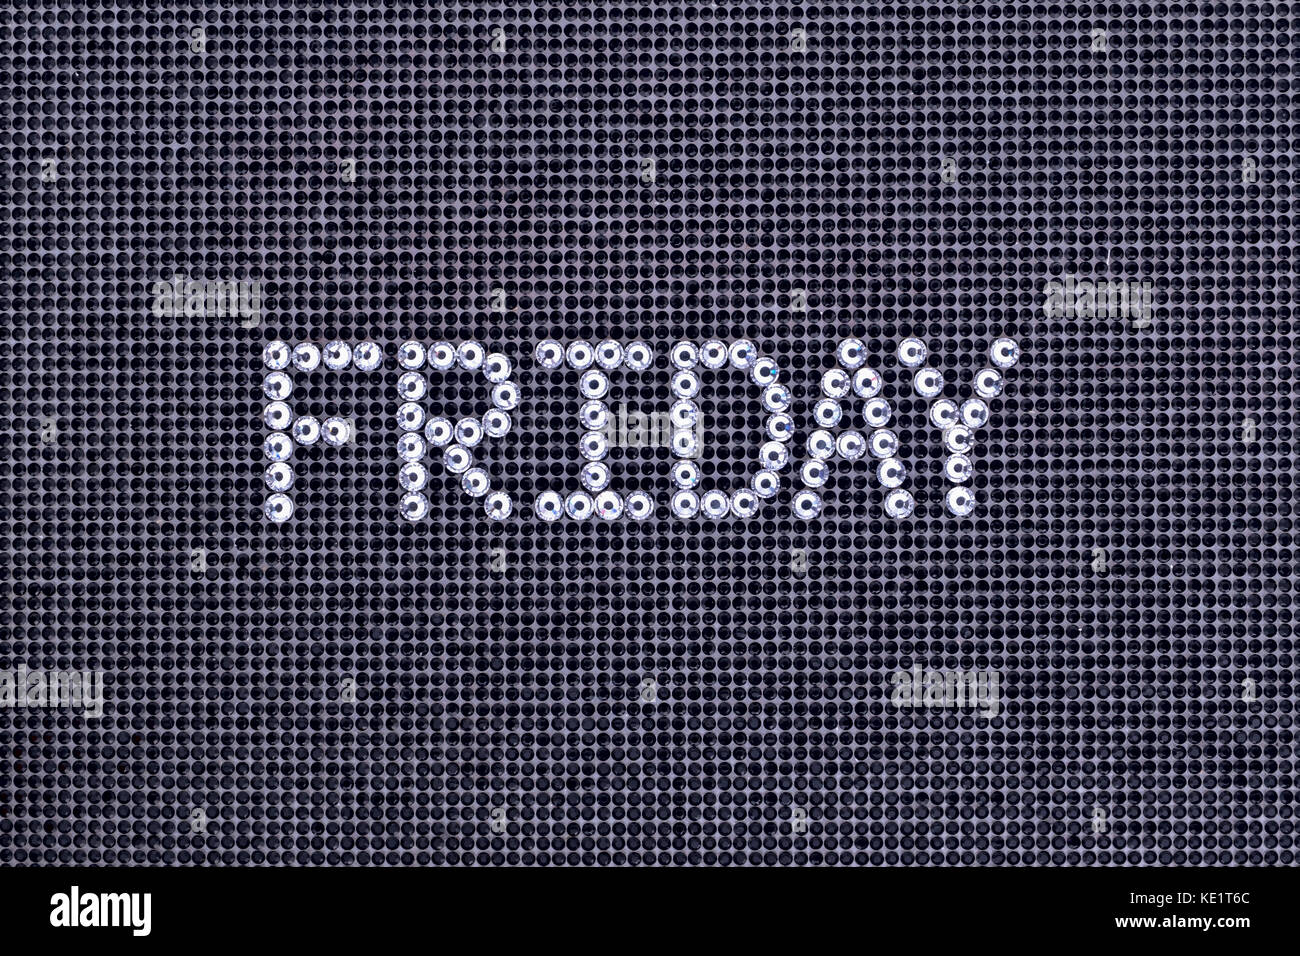 Il giorno della settimana, la parola venerdì è realizzato strass colore cristallo su una tela nera sullo sfondo Foto Stock